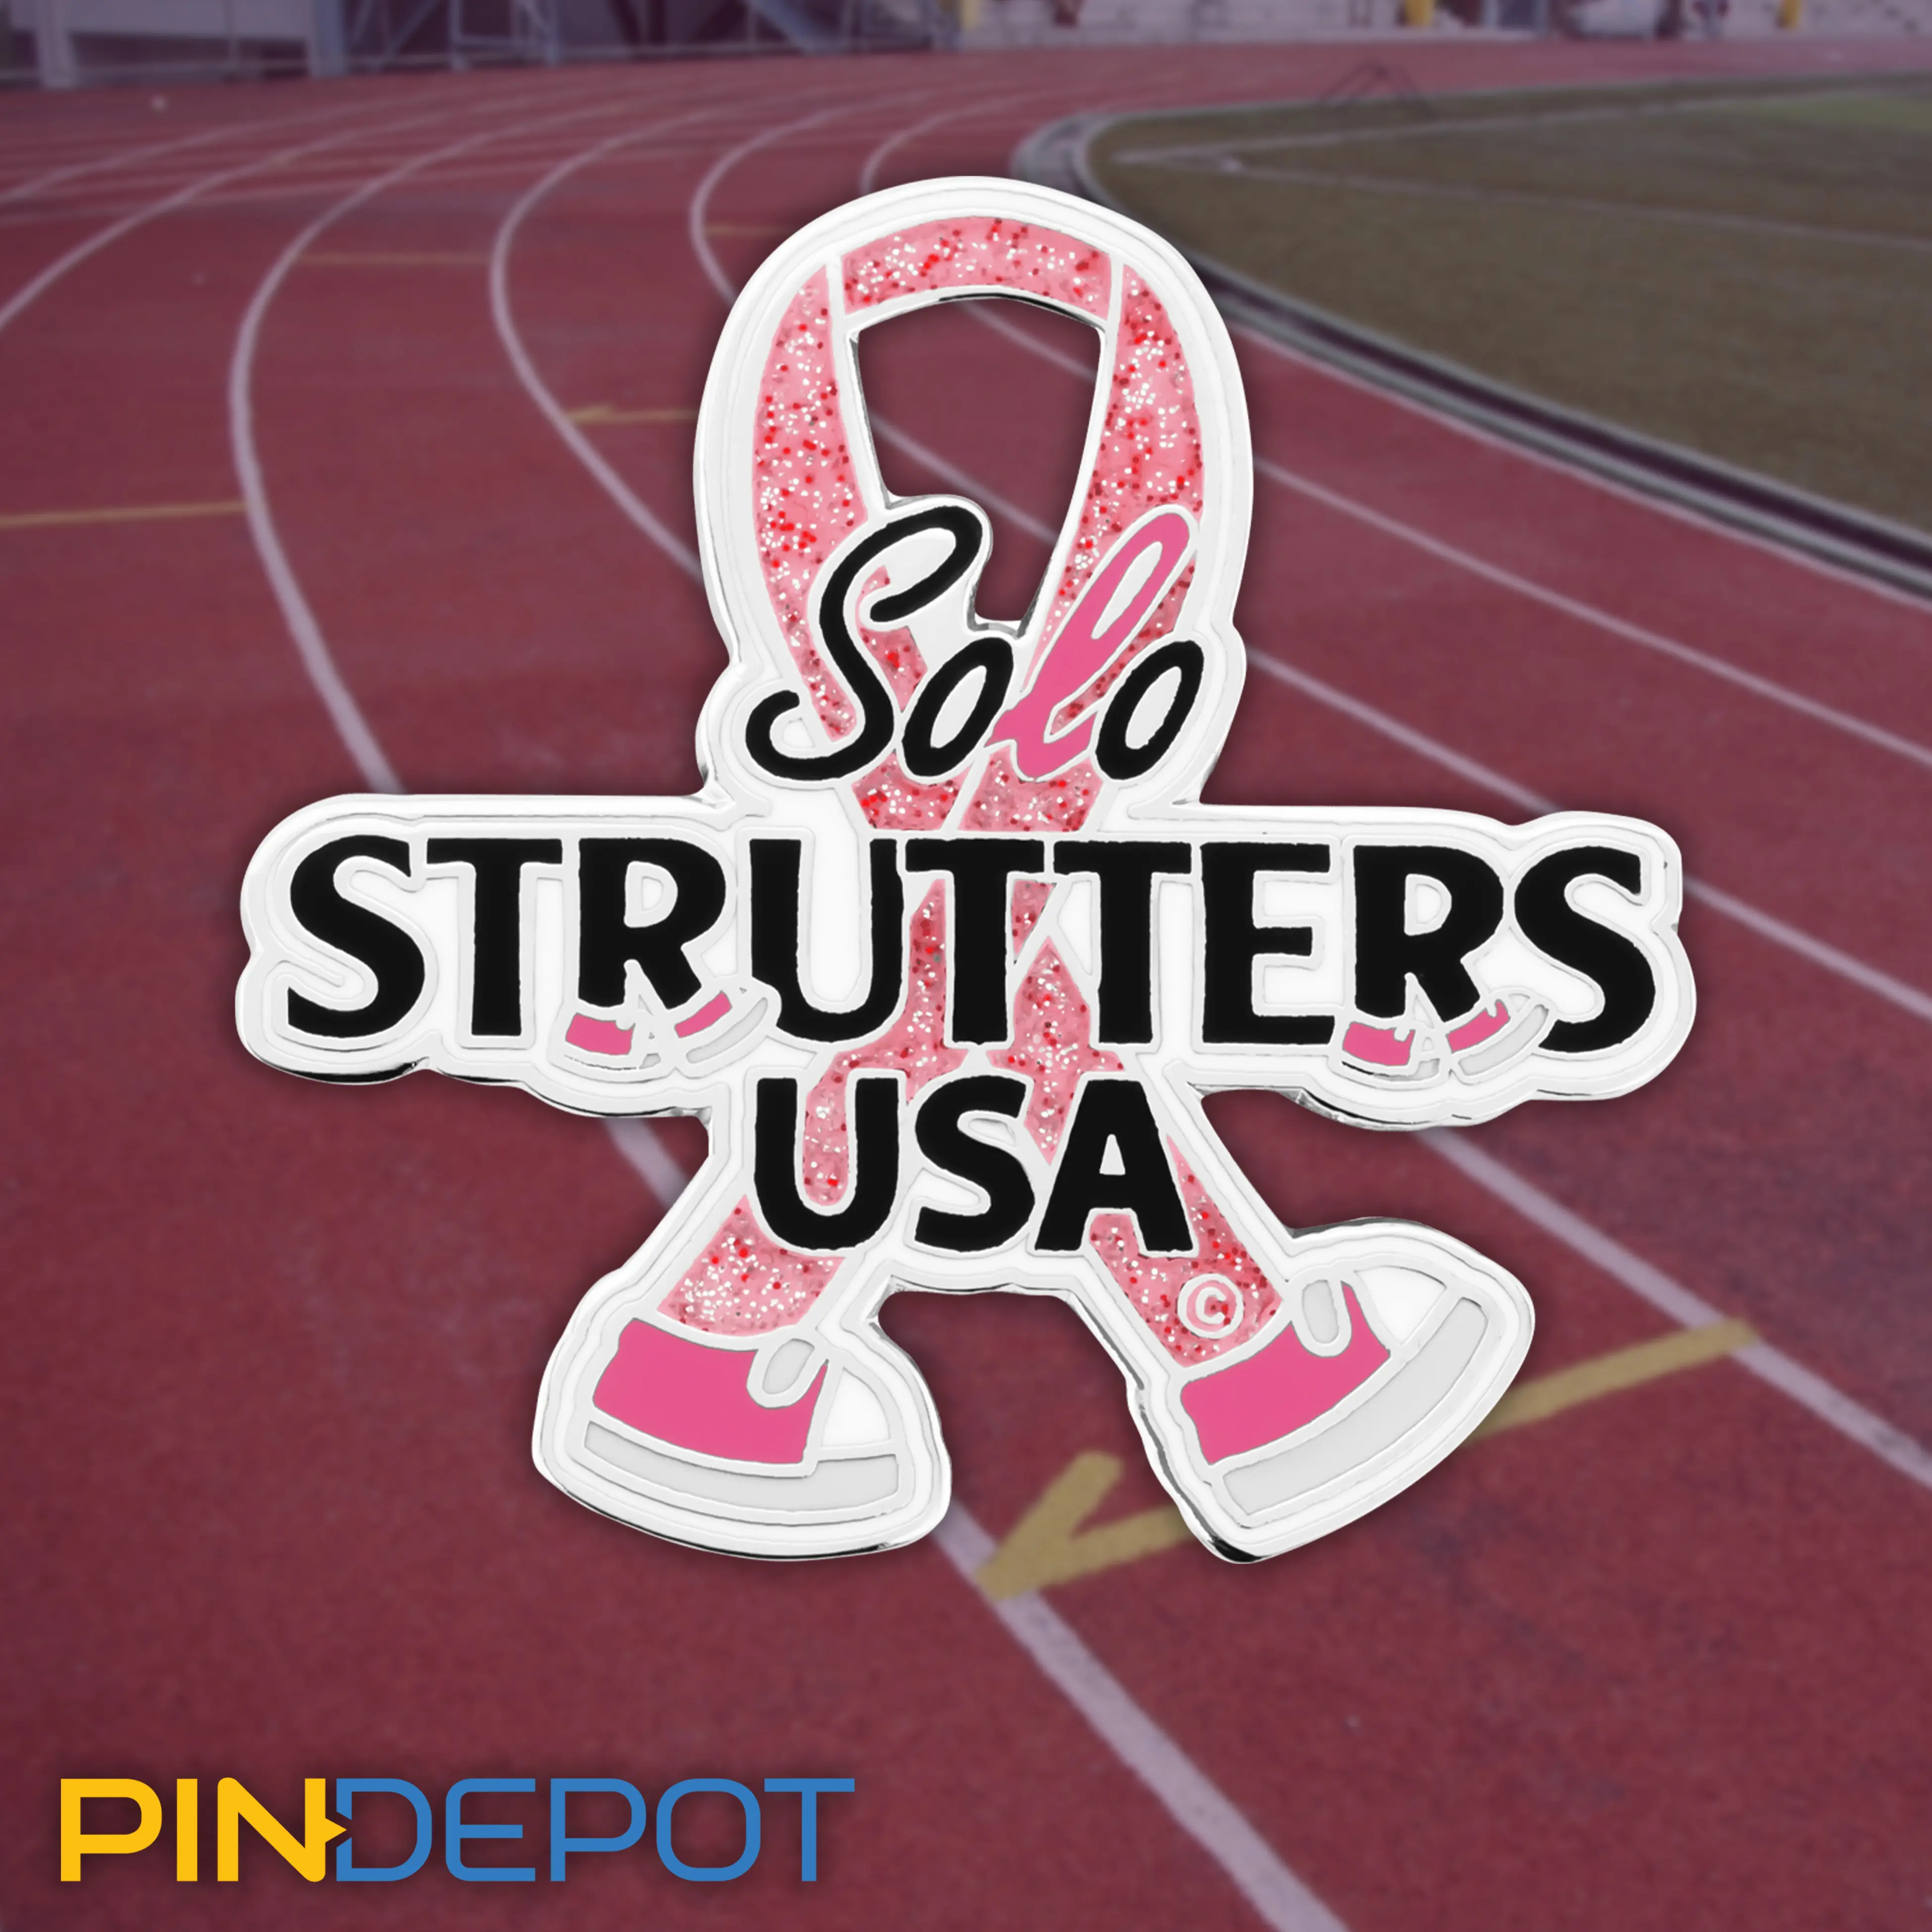 Strutters